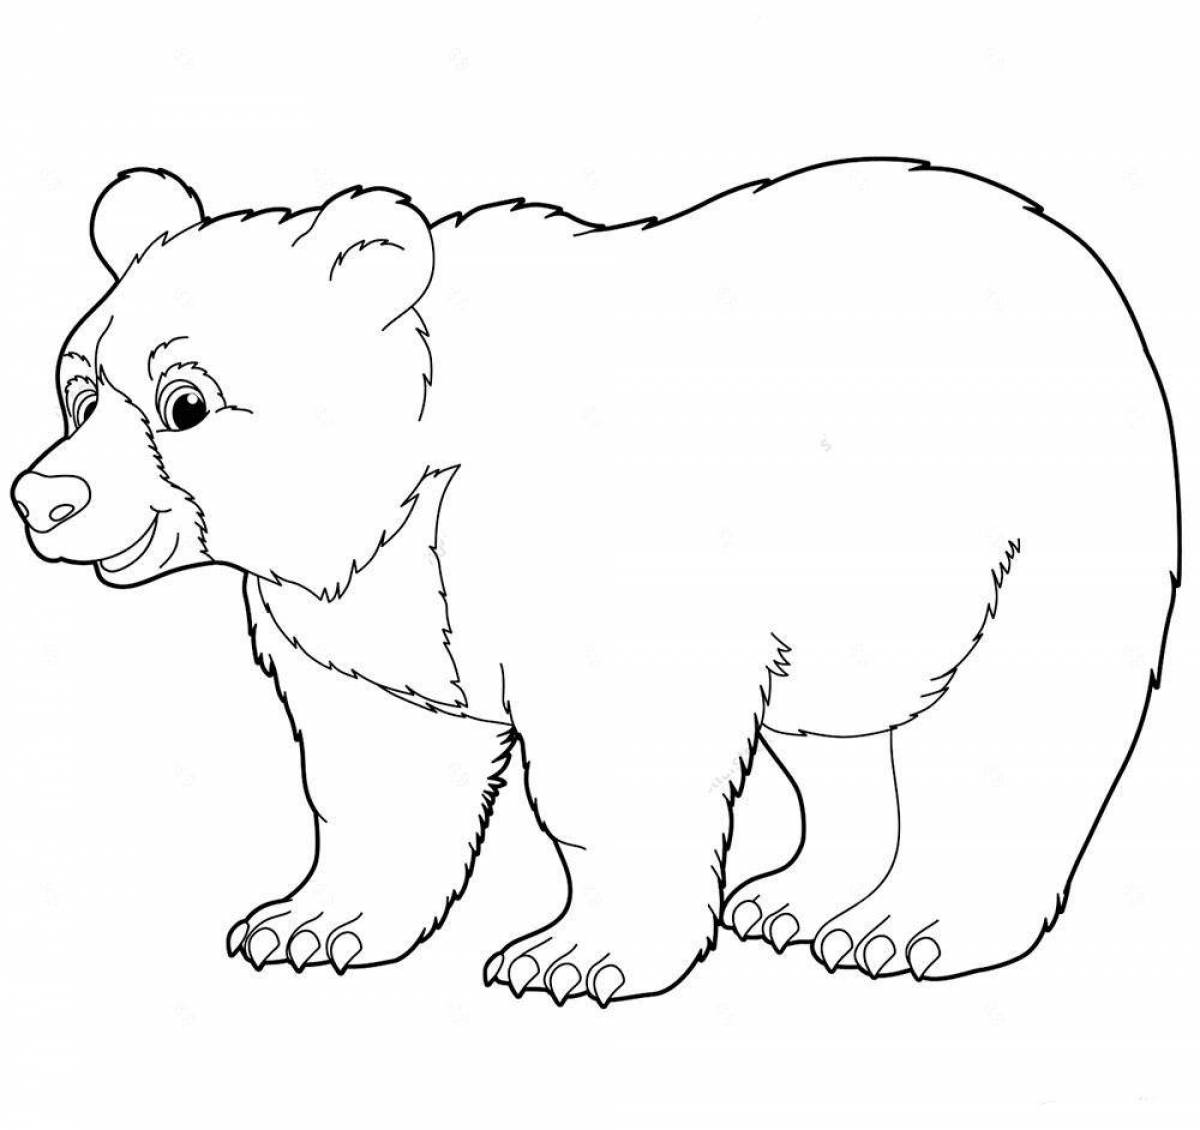 Playful polar bear coloring book for kids